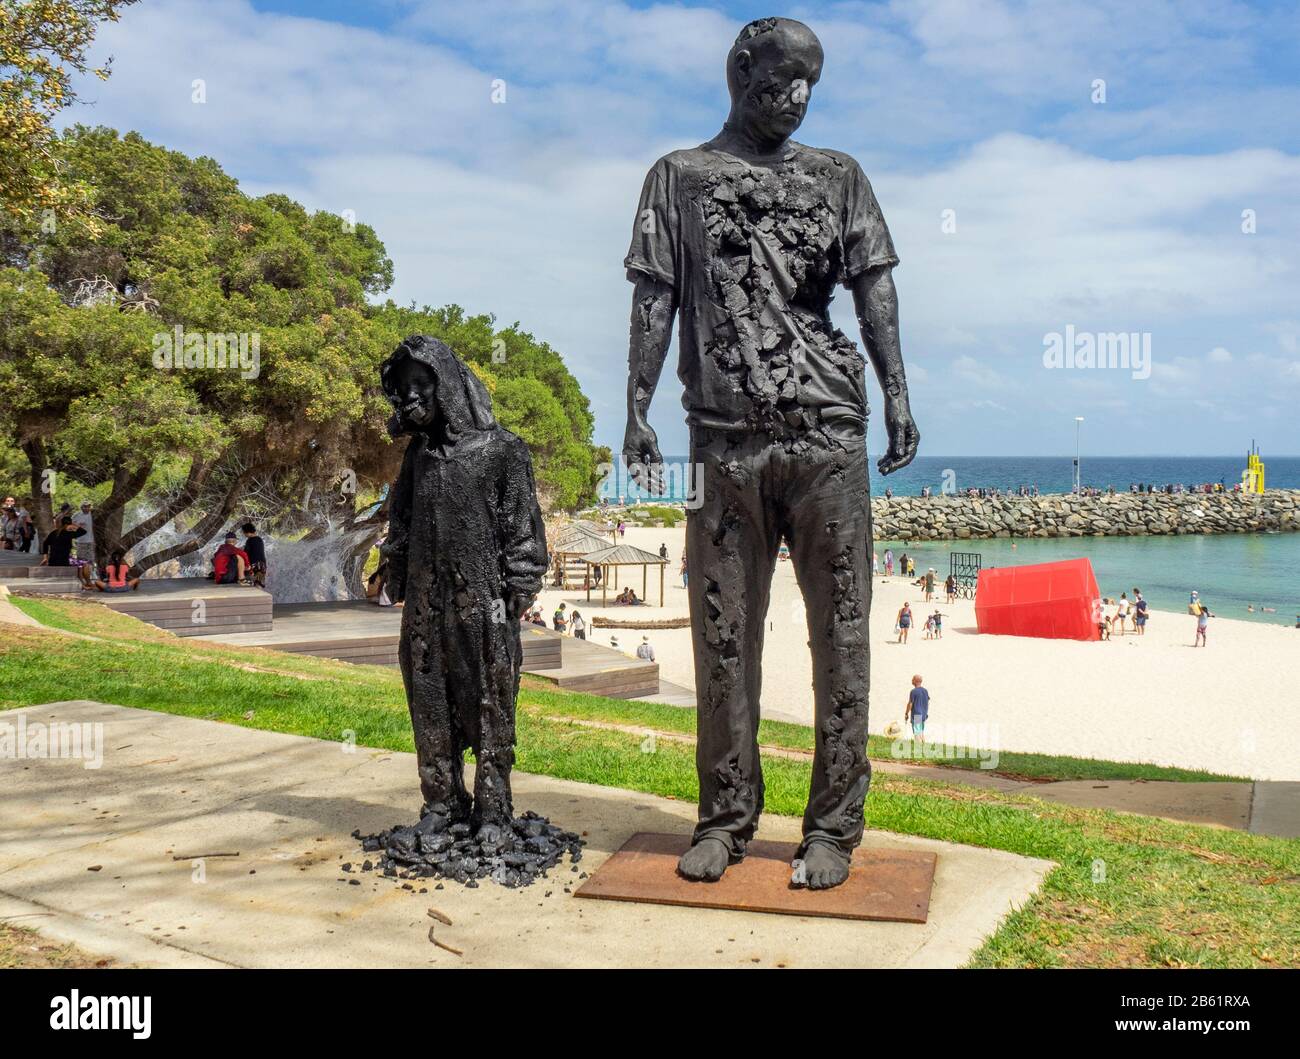 Vermächtnis, Bedauern und die Verlorene Generation von Louis Pratt Sculptor Artist in Sculpture by the Sea 2020 Exhibition Cottesloe Beach Perth WA Australia Stockfoto